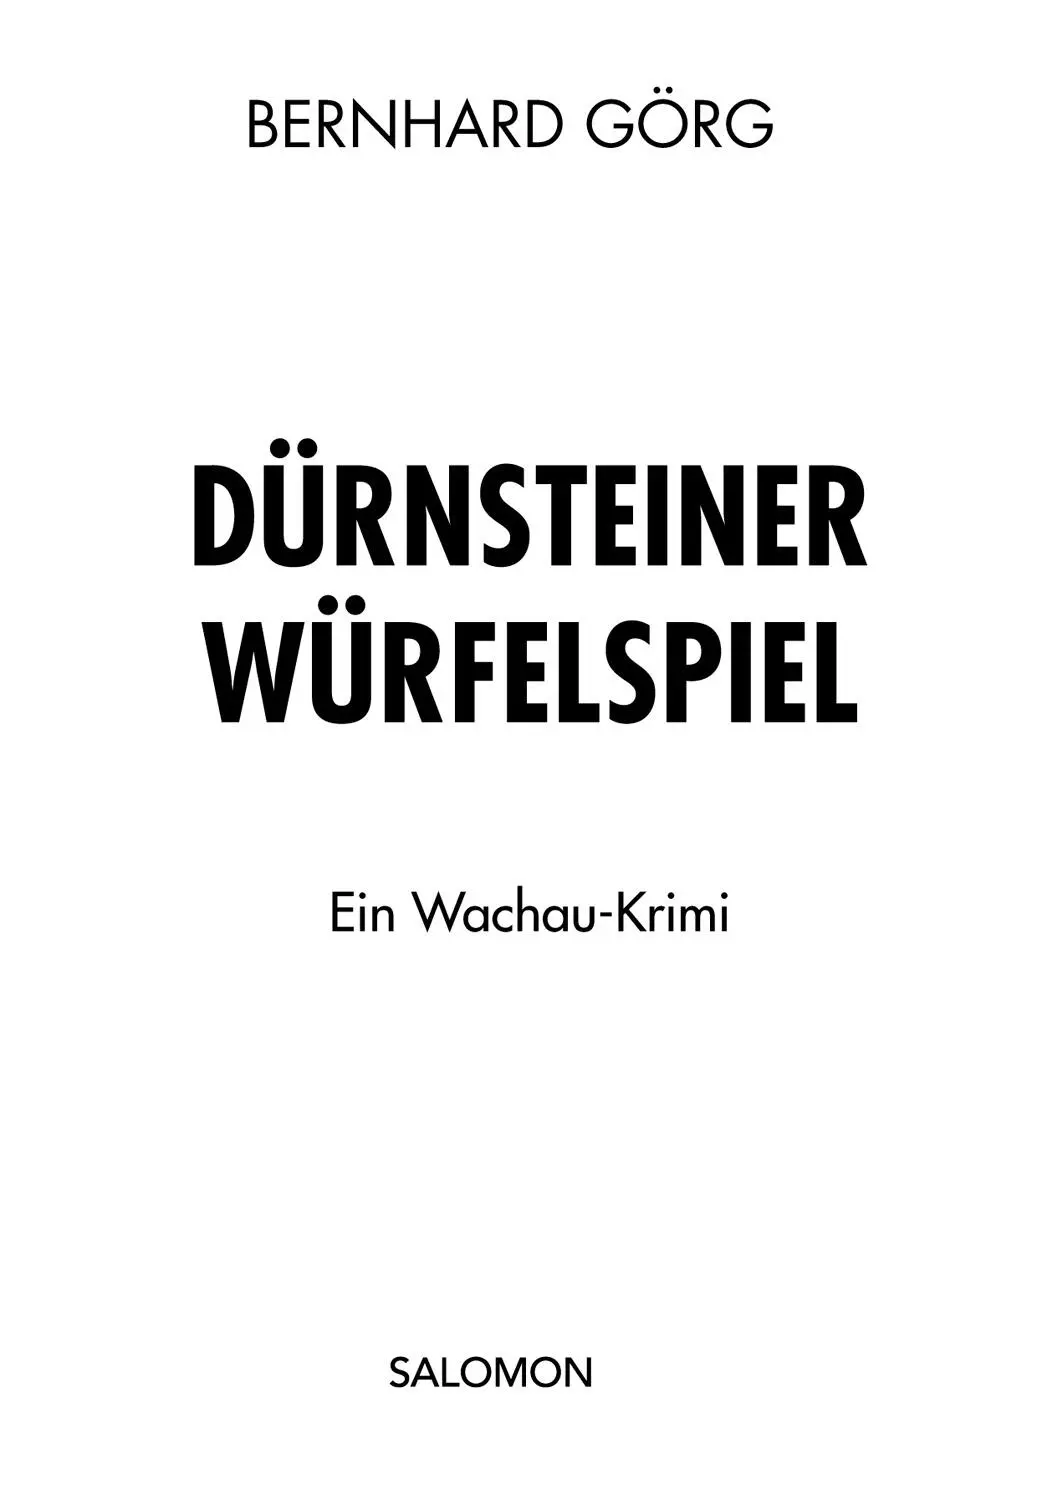 Bernhard Görg Dürnsteiner Würfelspiel Alle Rechte vorbehalten 2017 edition - фото 1